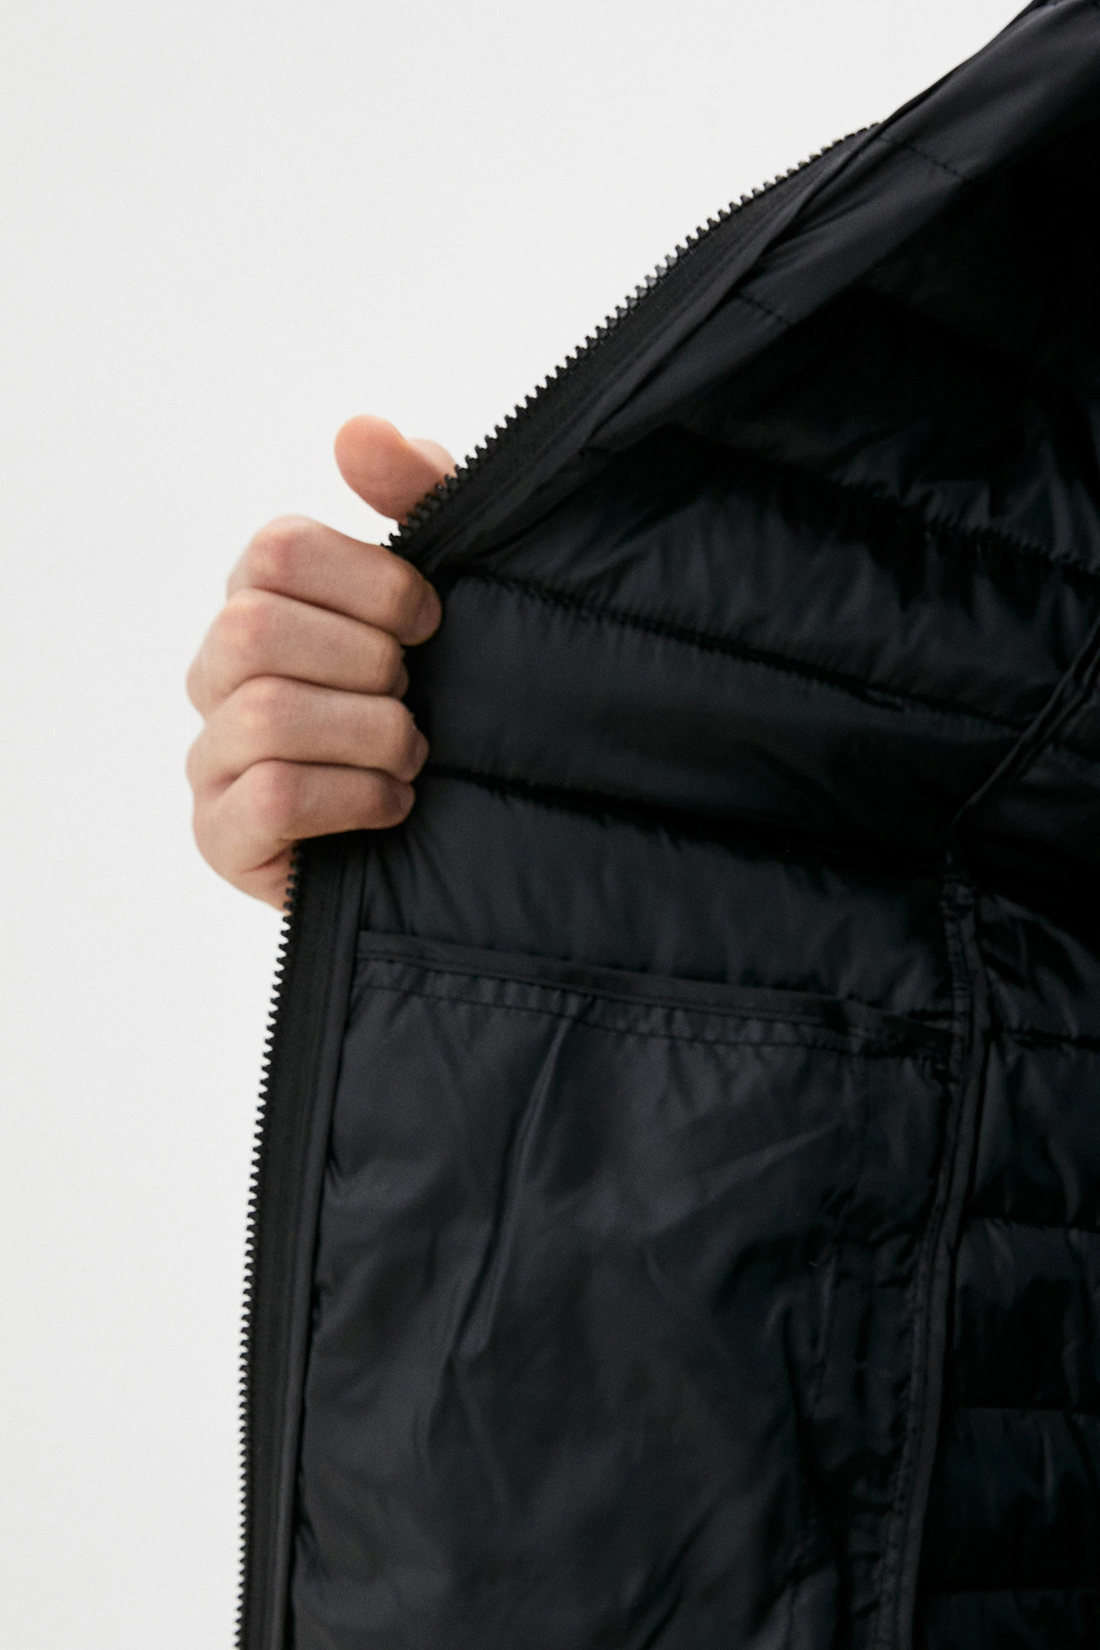 Куртка (Эко пух) (арт. baon B540519), размер M, цвет asphalt printed#серый Куртка (Эко пух) (арт. baon B540519) - фото 4